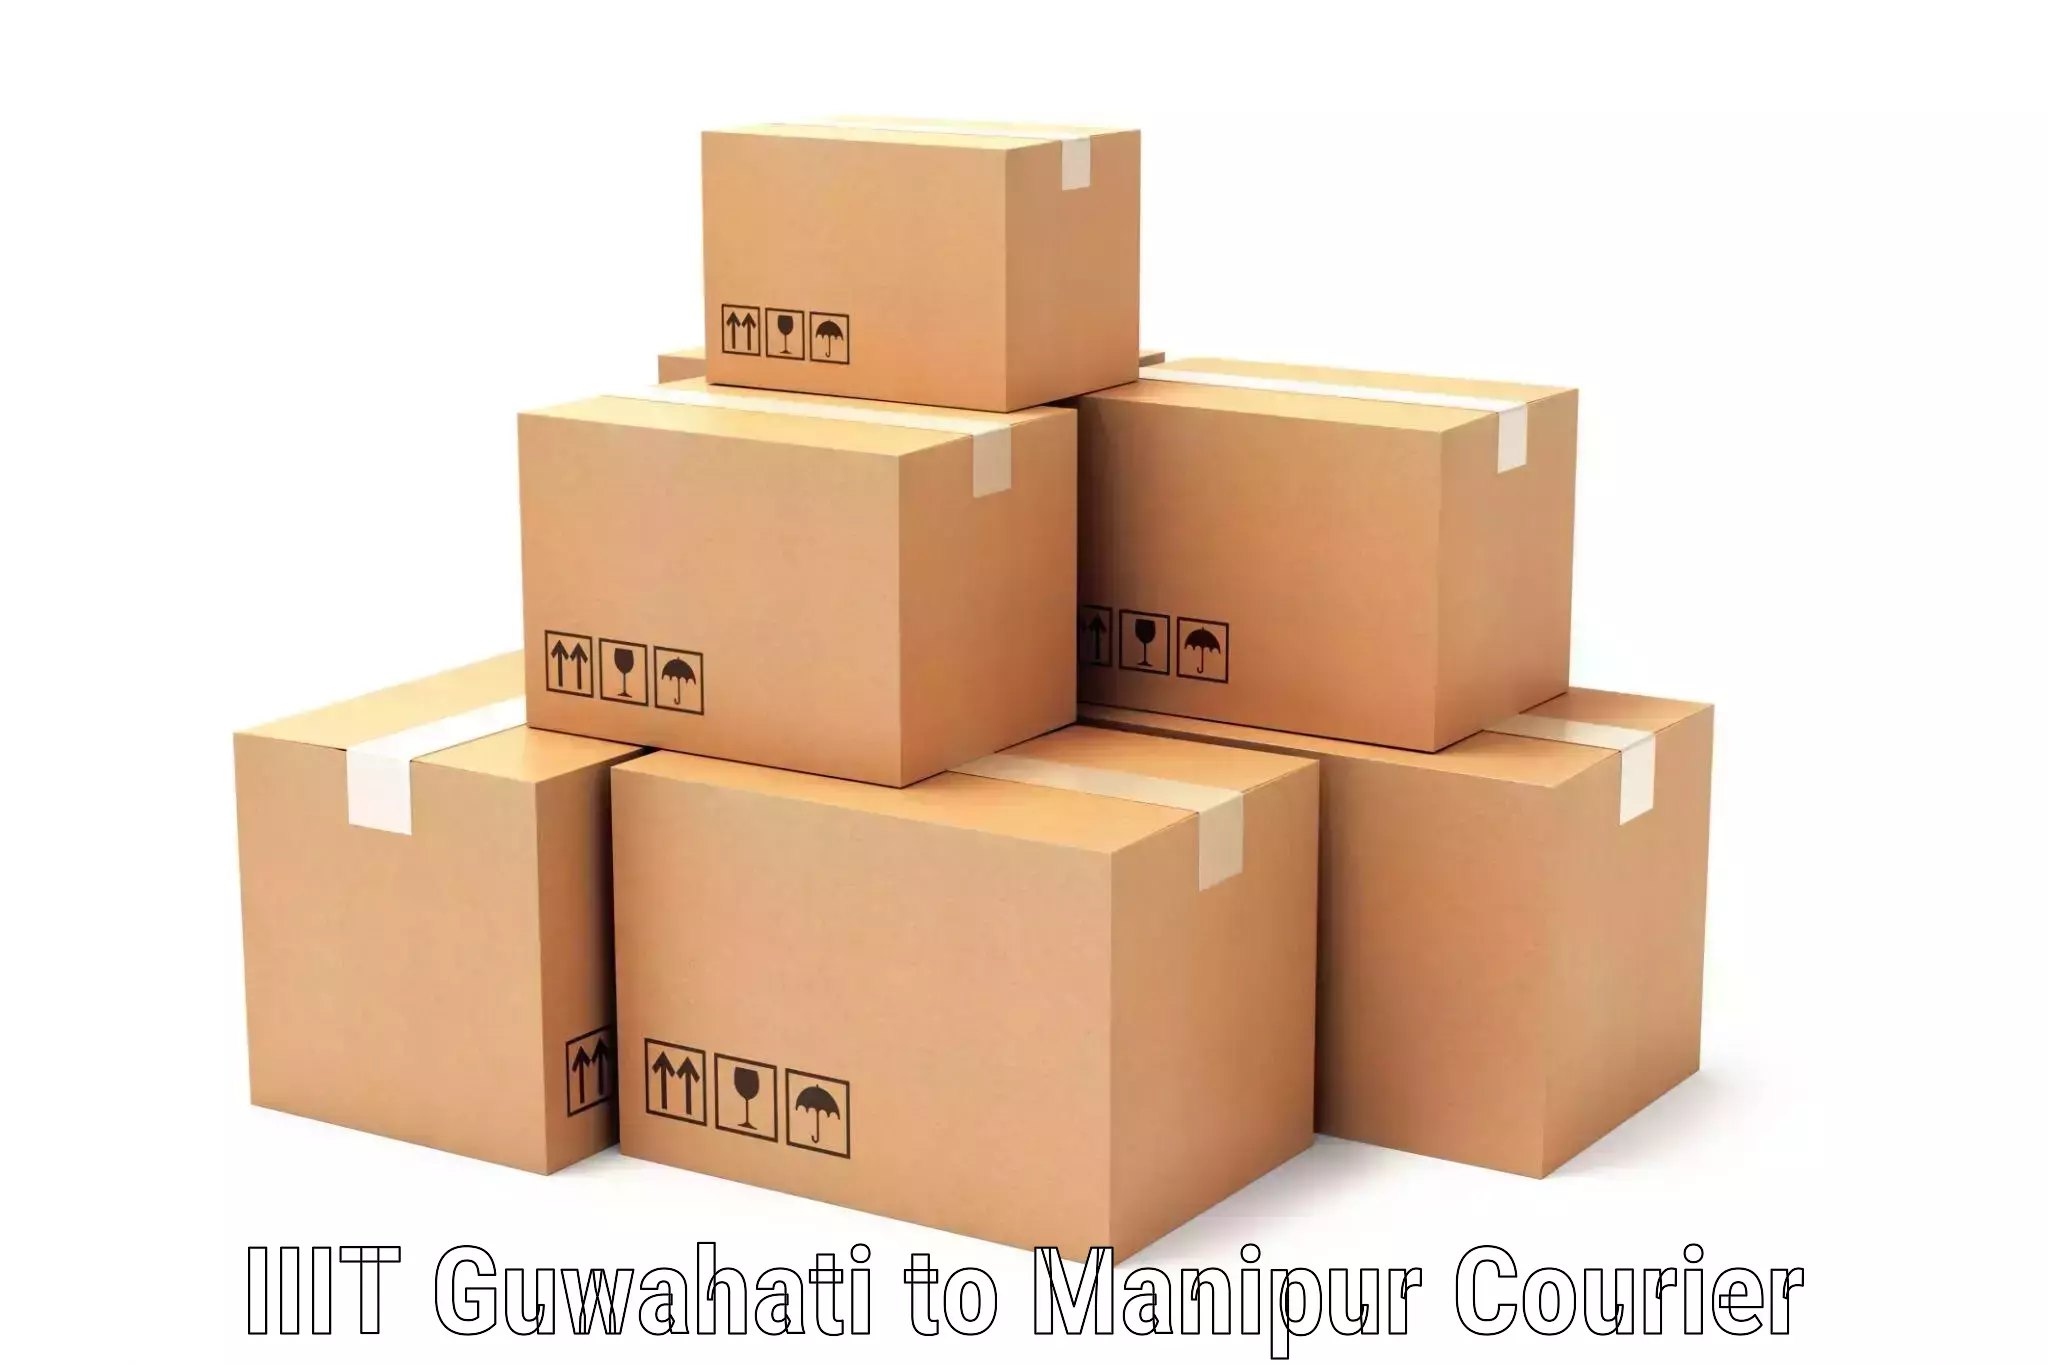 Courier rate comparison IIIT Guwahati to Churachandpur